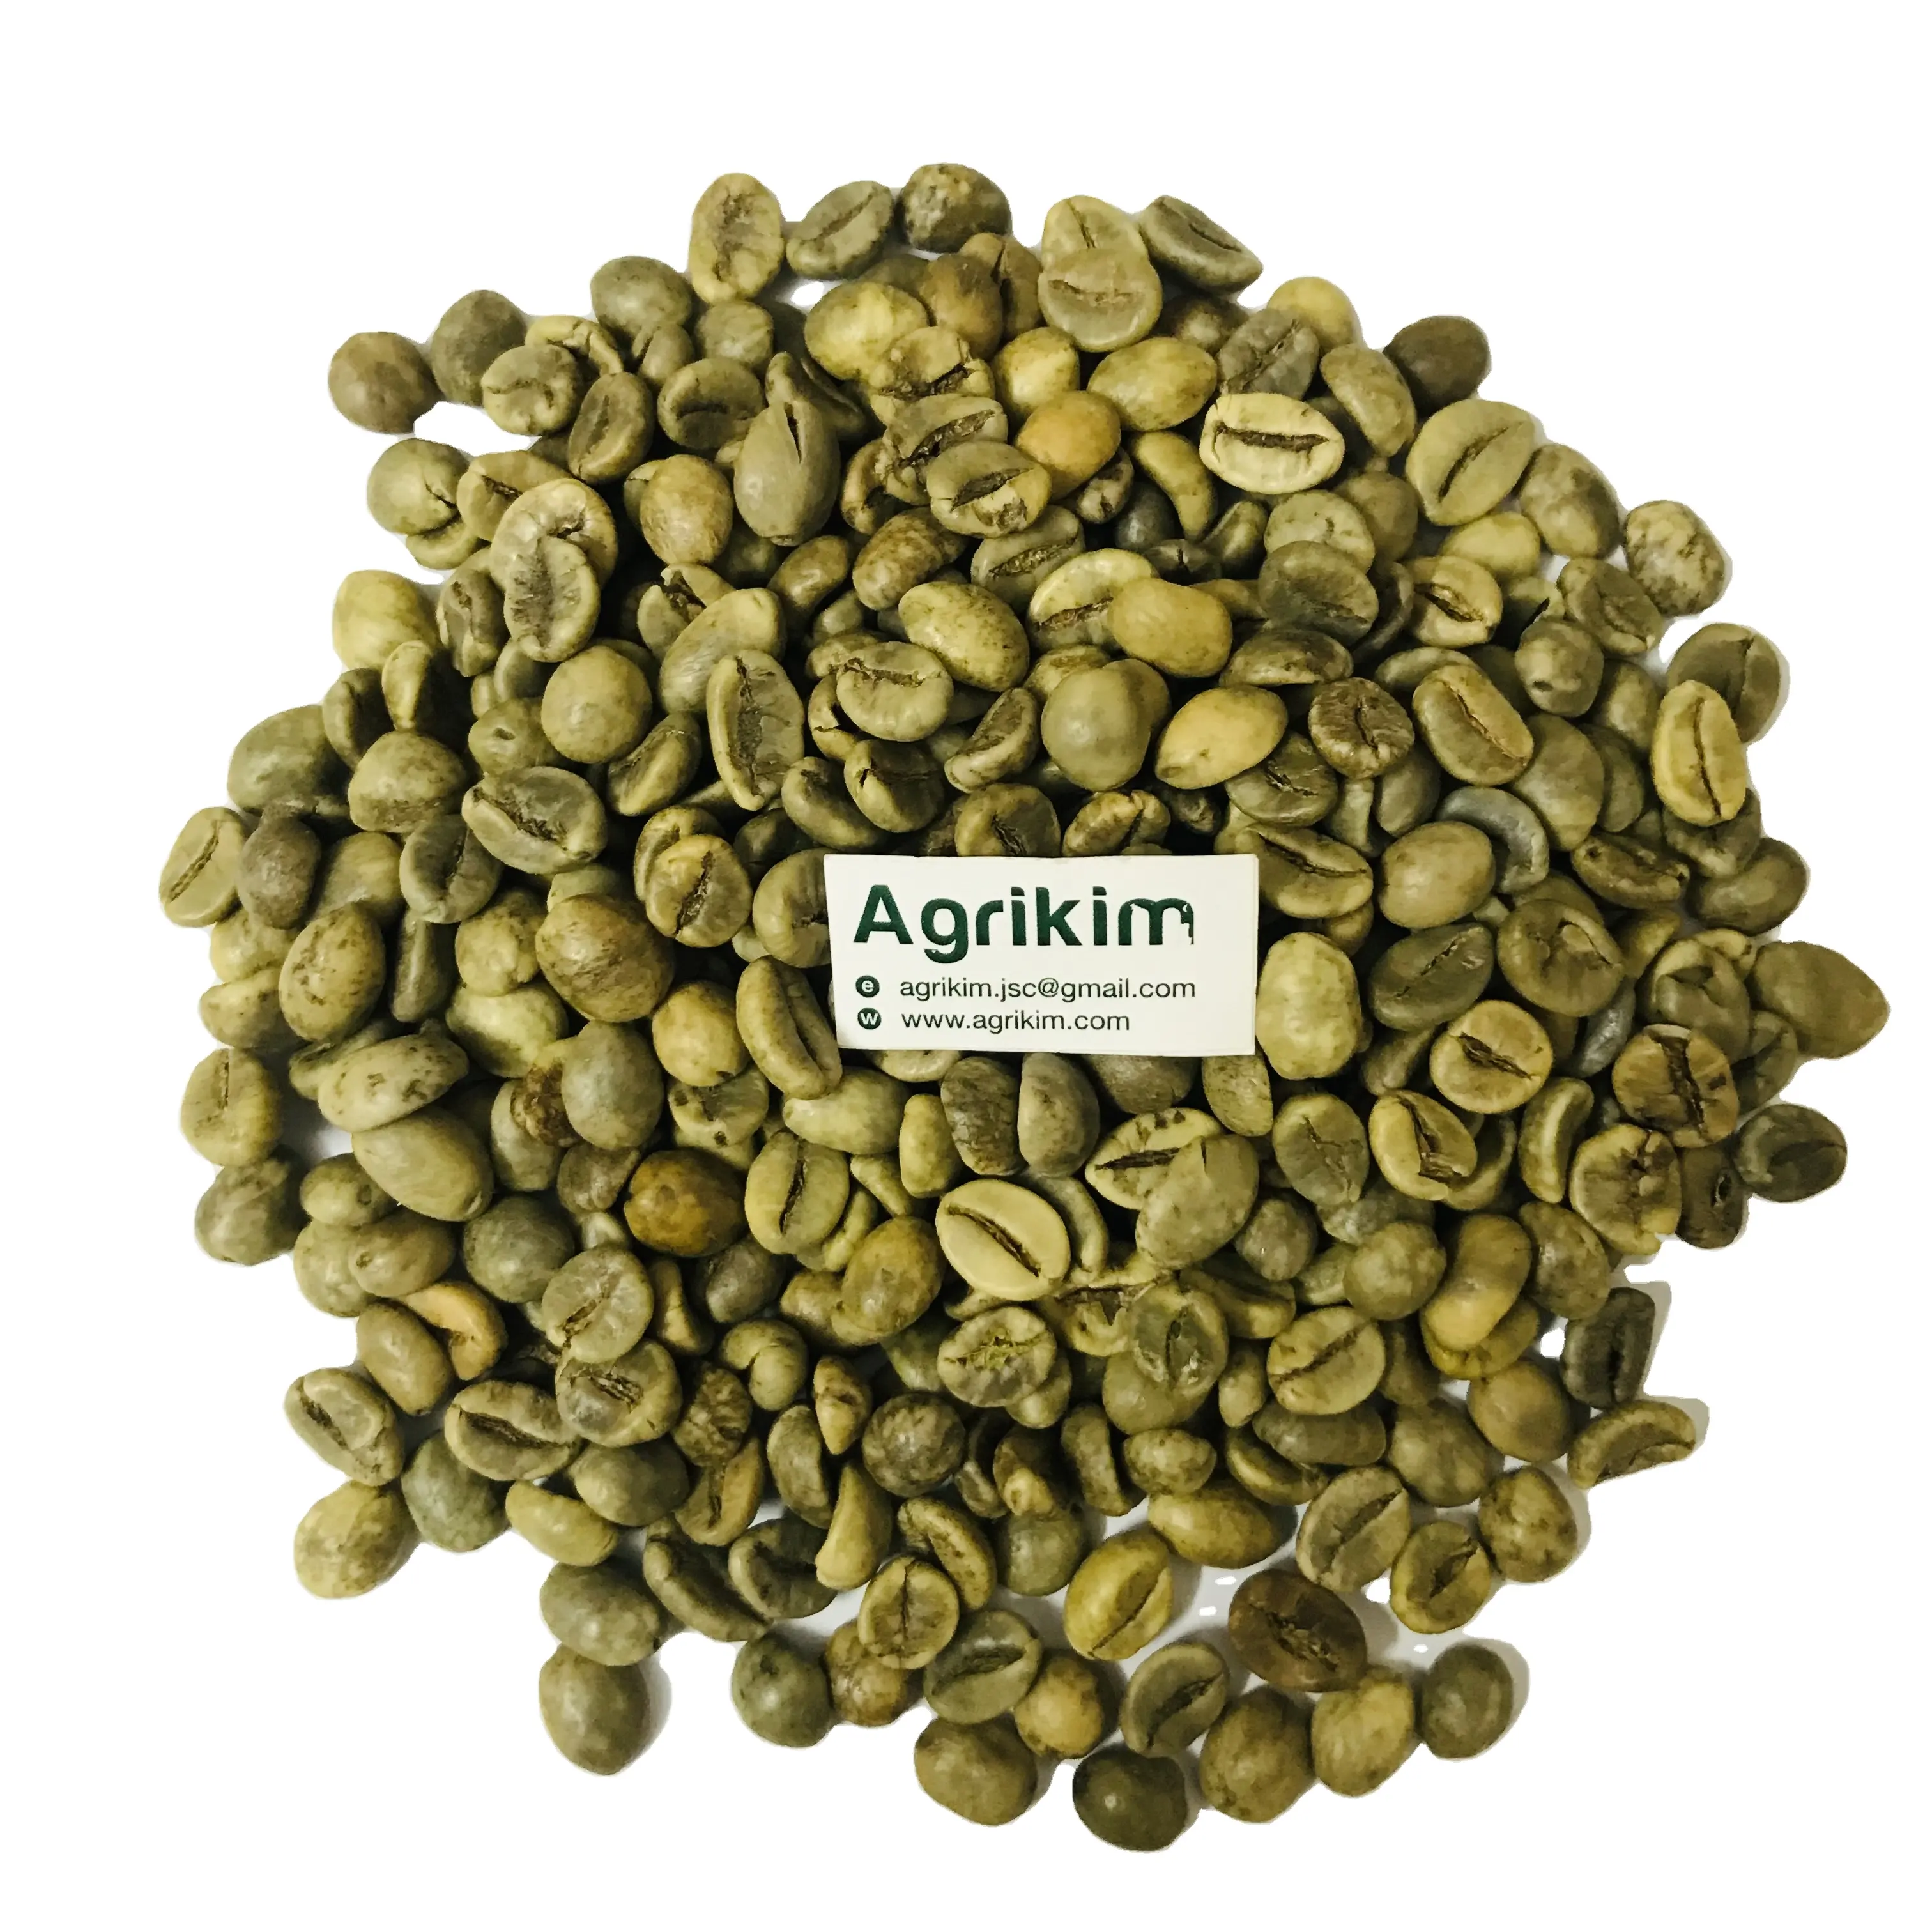 수출 대량 녹색 커피 콩 베트남 원산지 아라비카 로부스타 구운 커피 콩 최고의 가격 베트남 + 84 326055616